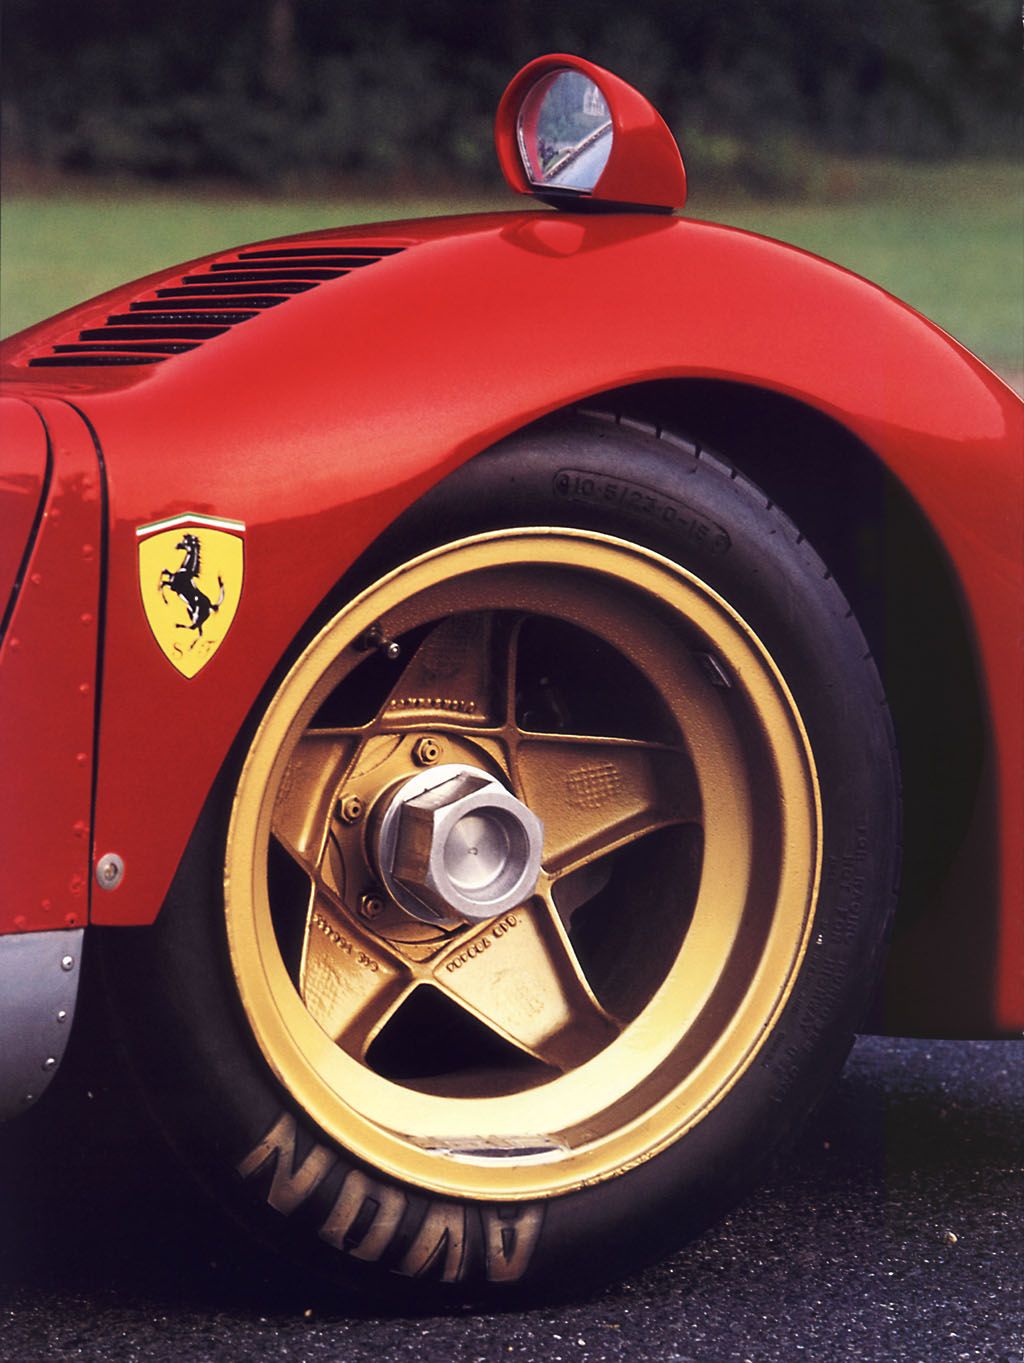 When will 599's gain classic collector status - Page 3 - Ferrari V12 - PistonHeads